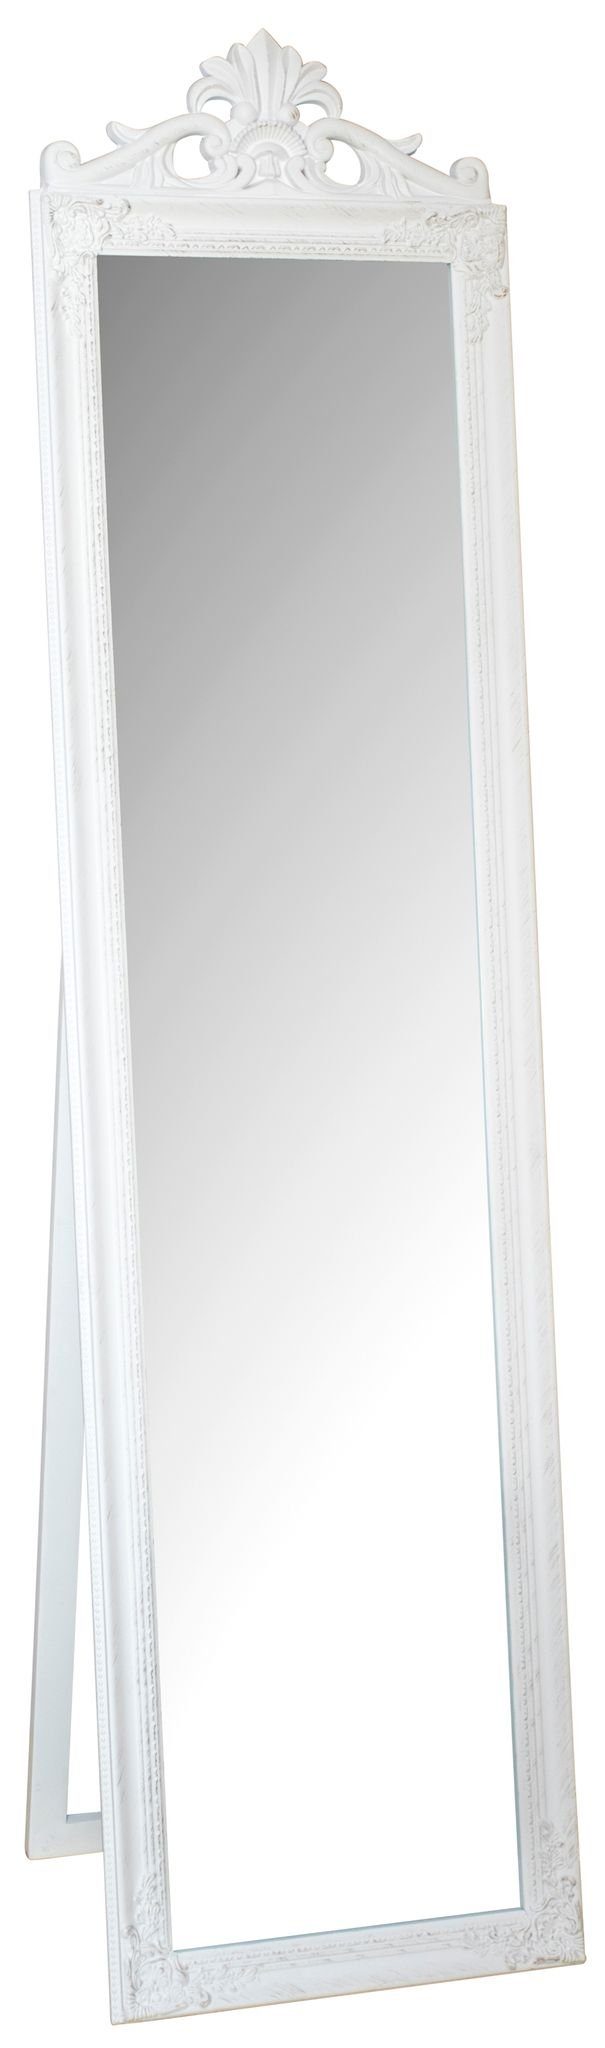 elbmöbel Standspiegel Standspiegel weiß groß, Spiegel: Standspiegel 180x45x5 cm weiß Barock | Standspiegel